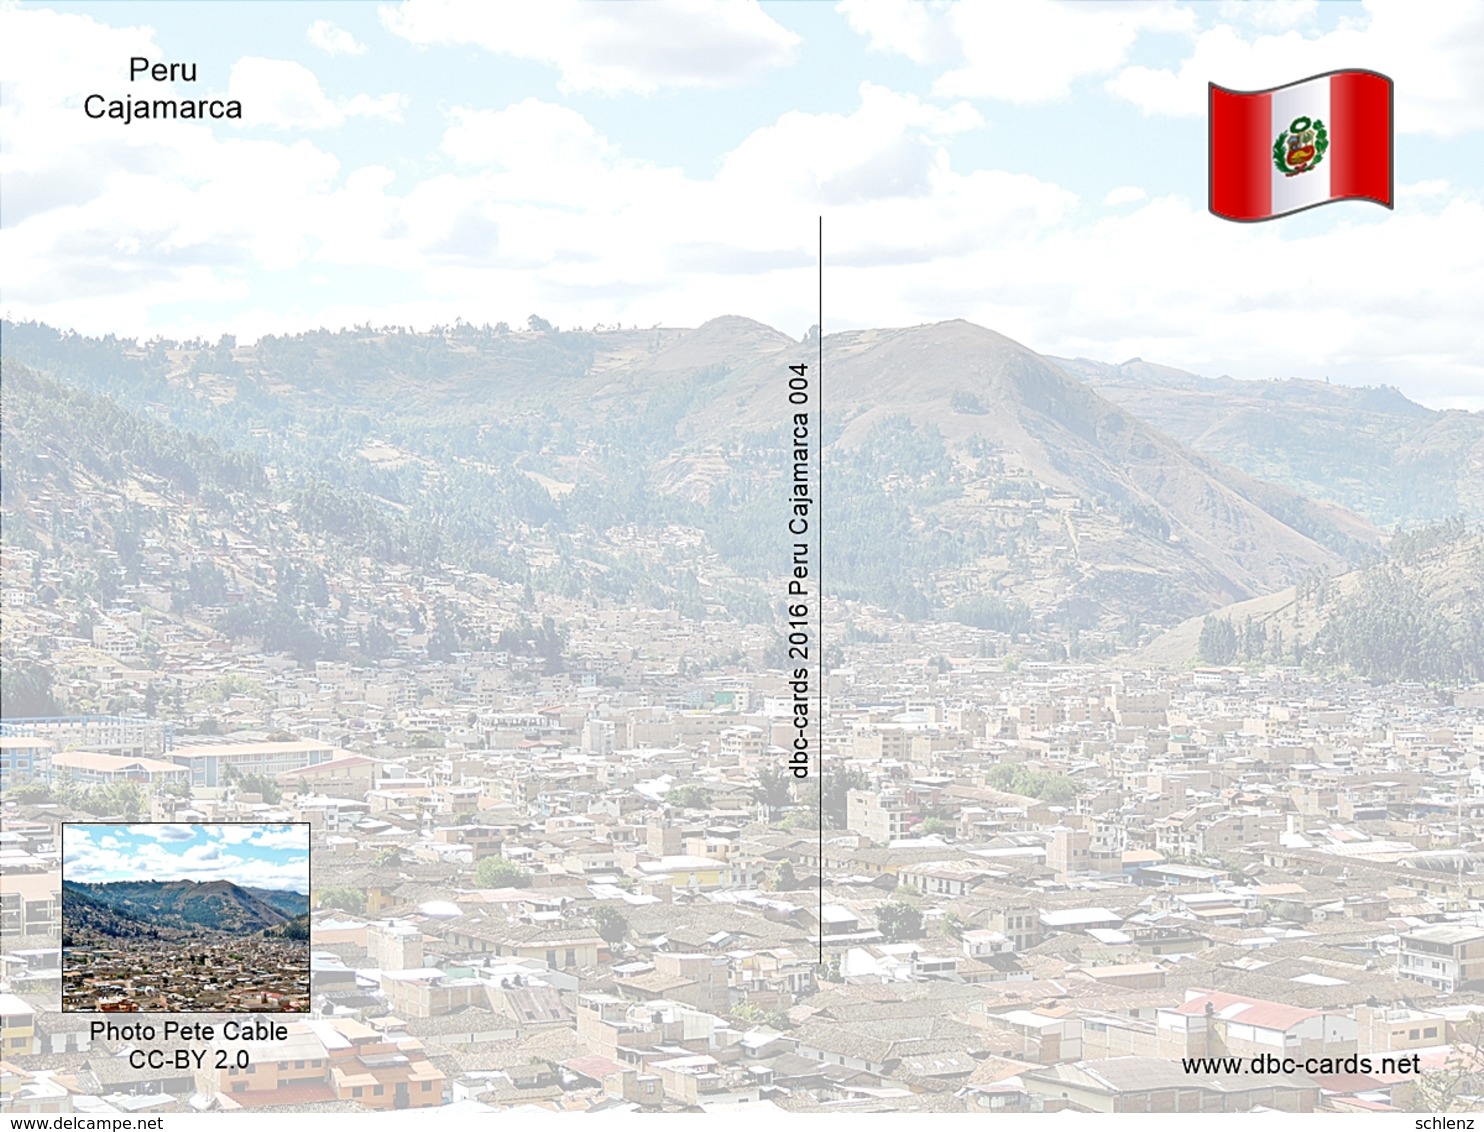 Cajamarca Peru - Peru